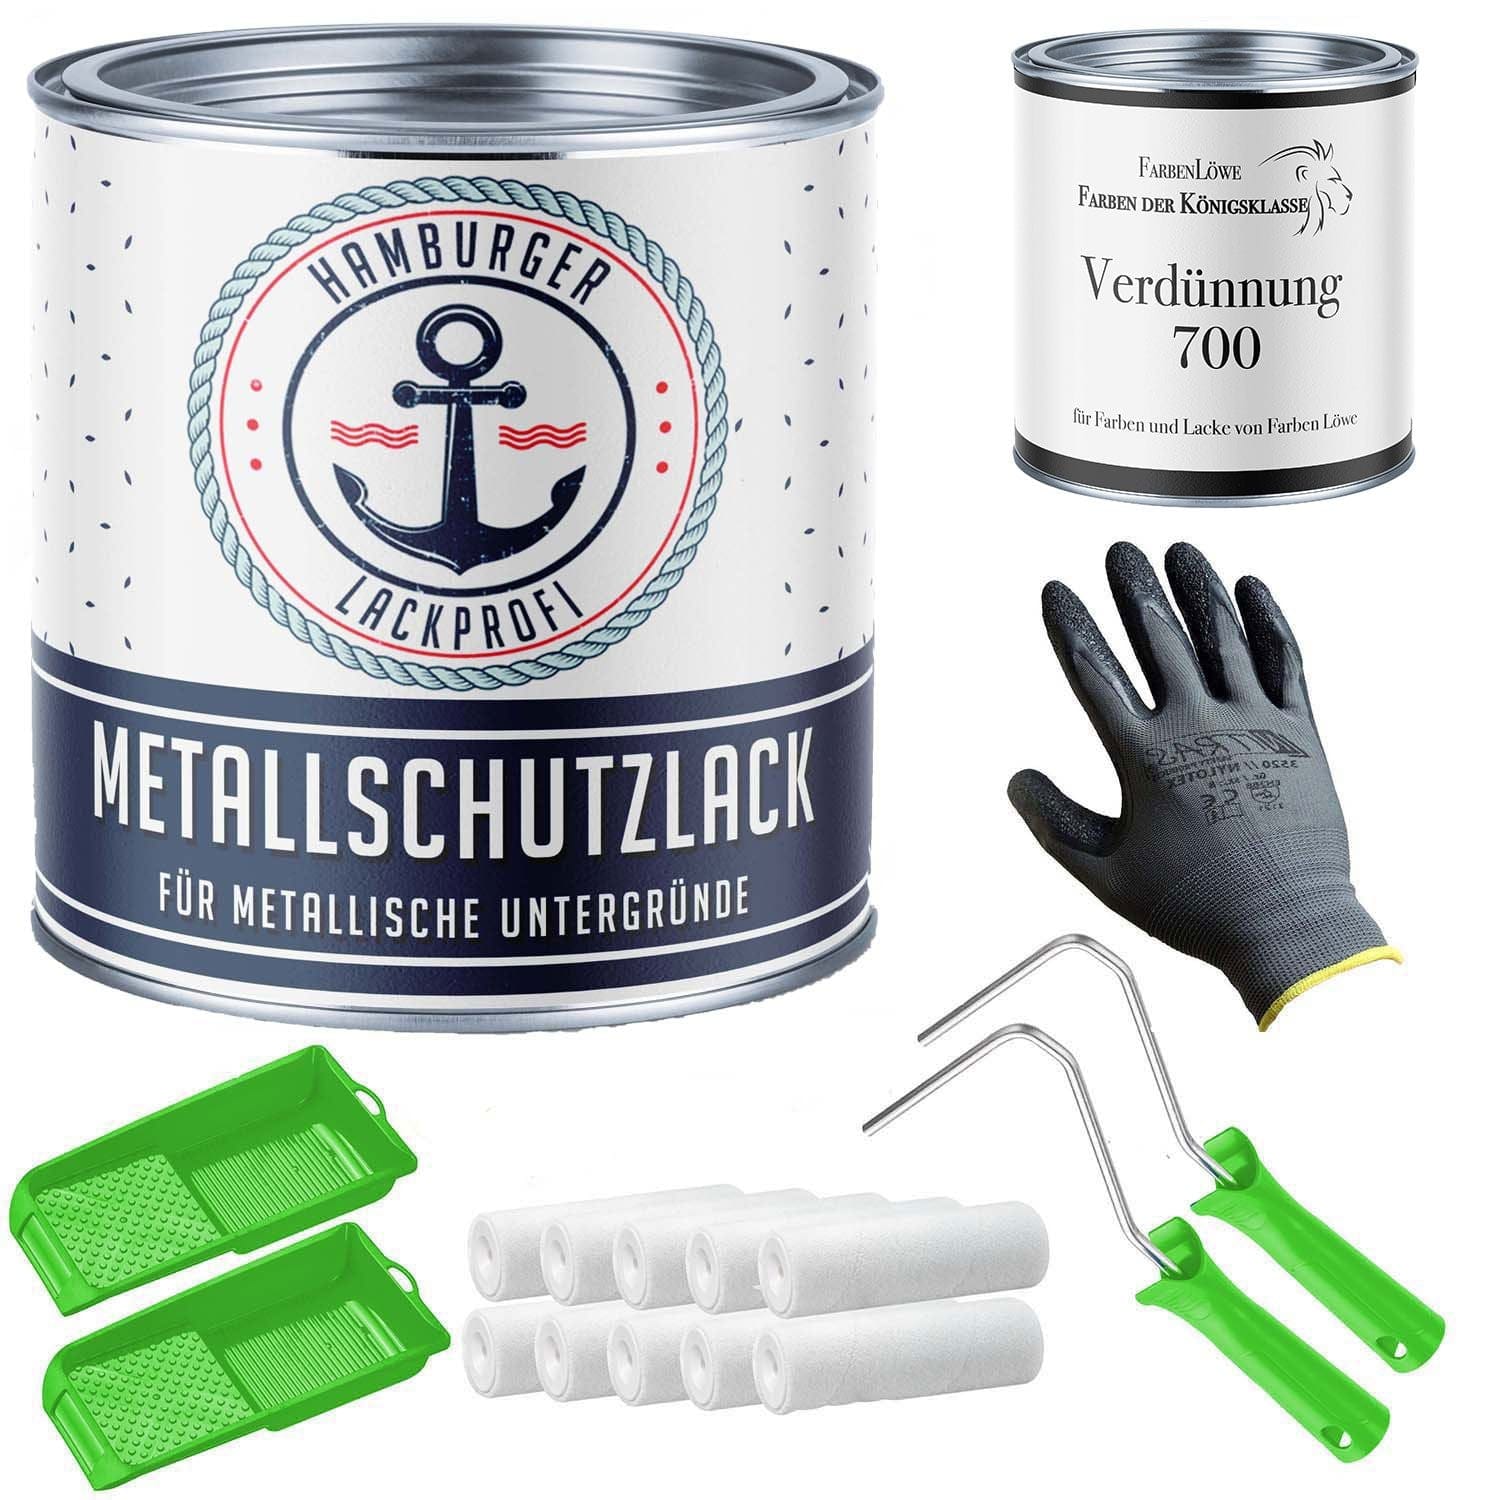 FARBENLÖWE Lacke & Beschichtungen Hamburger Lack-Profi Metallschutzlack in Schiefergrau RAL 7015 mit Lackierset (X300) & Verdünnung (1 L) - 30% Sparangebot